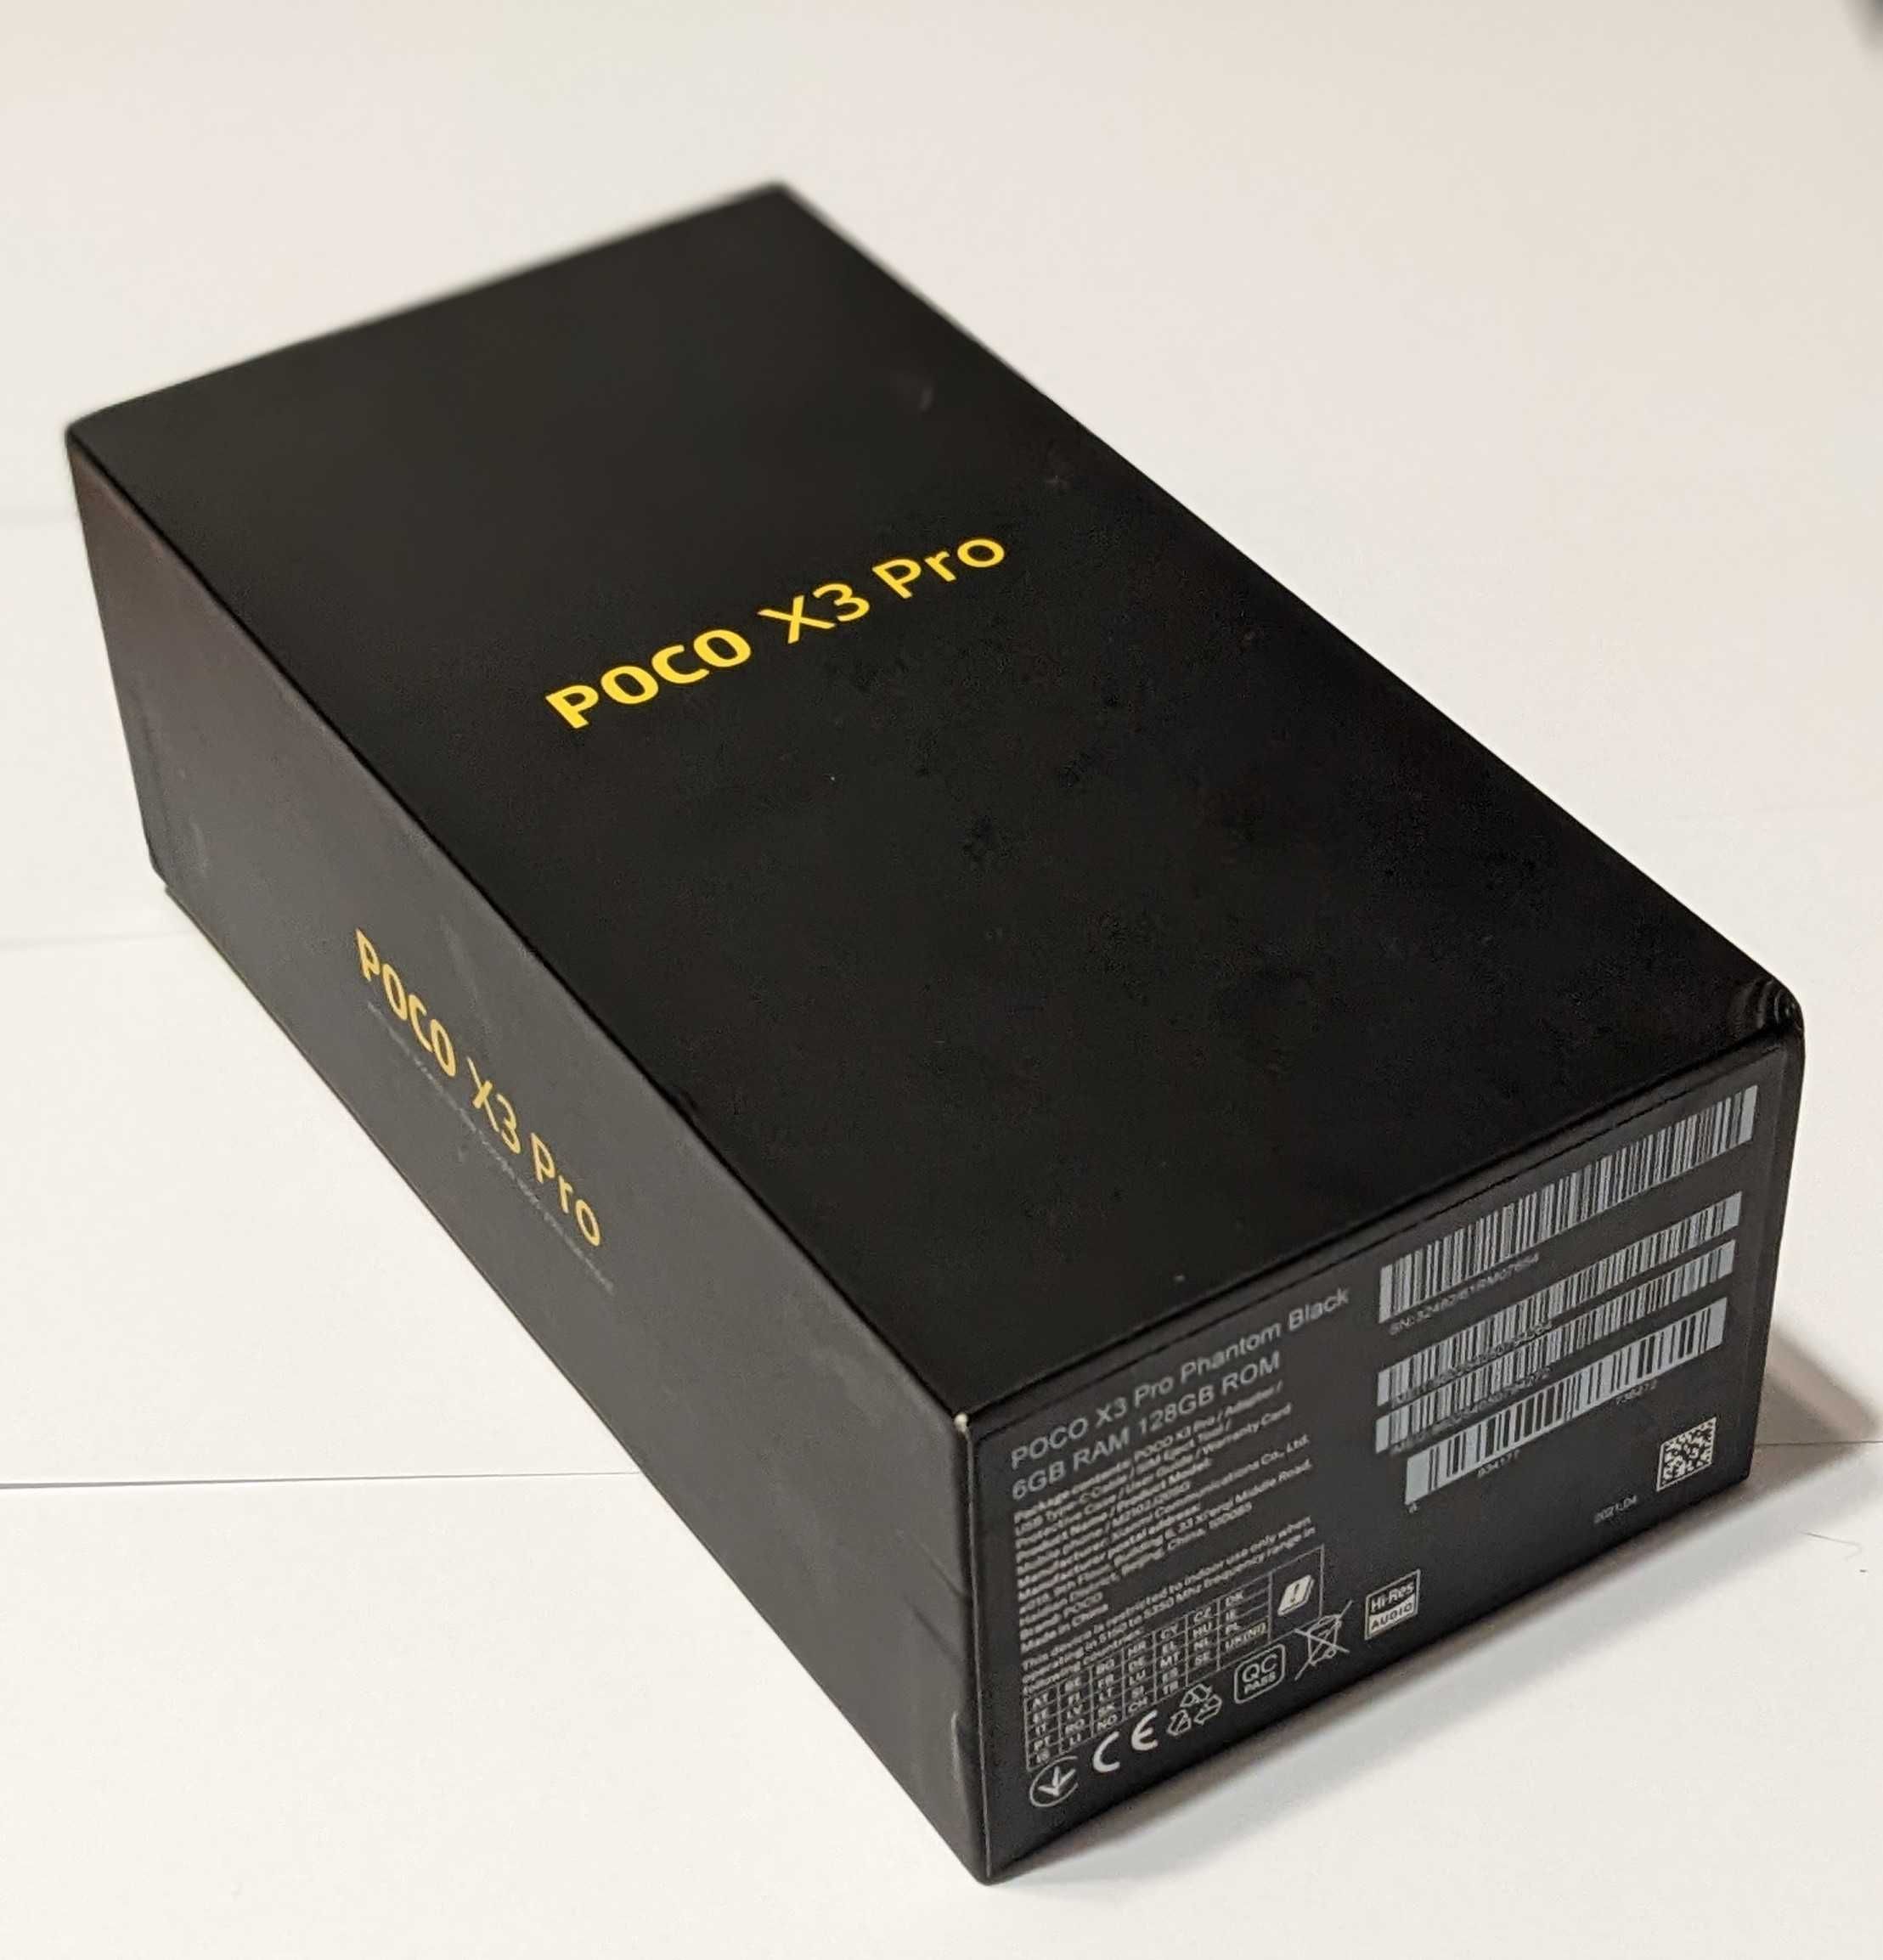 POCO X3 PRO Phantom Black 6/128 GB + dodatki